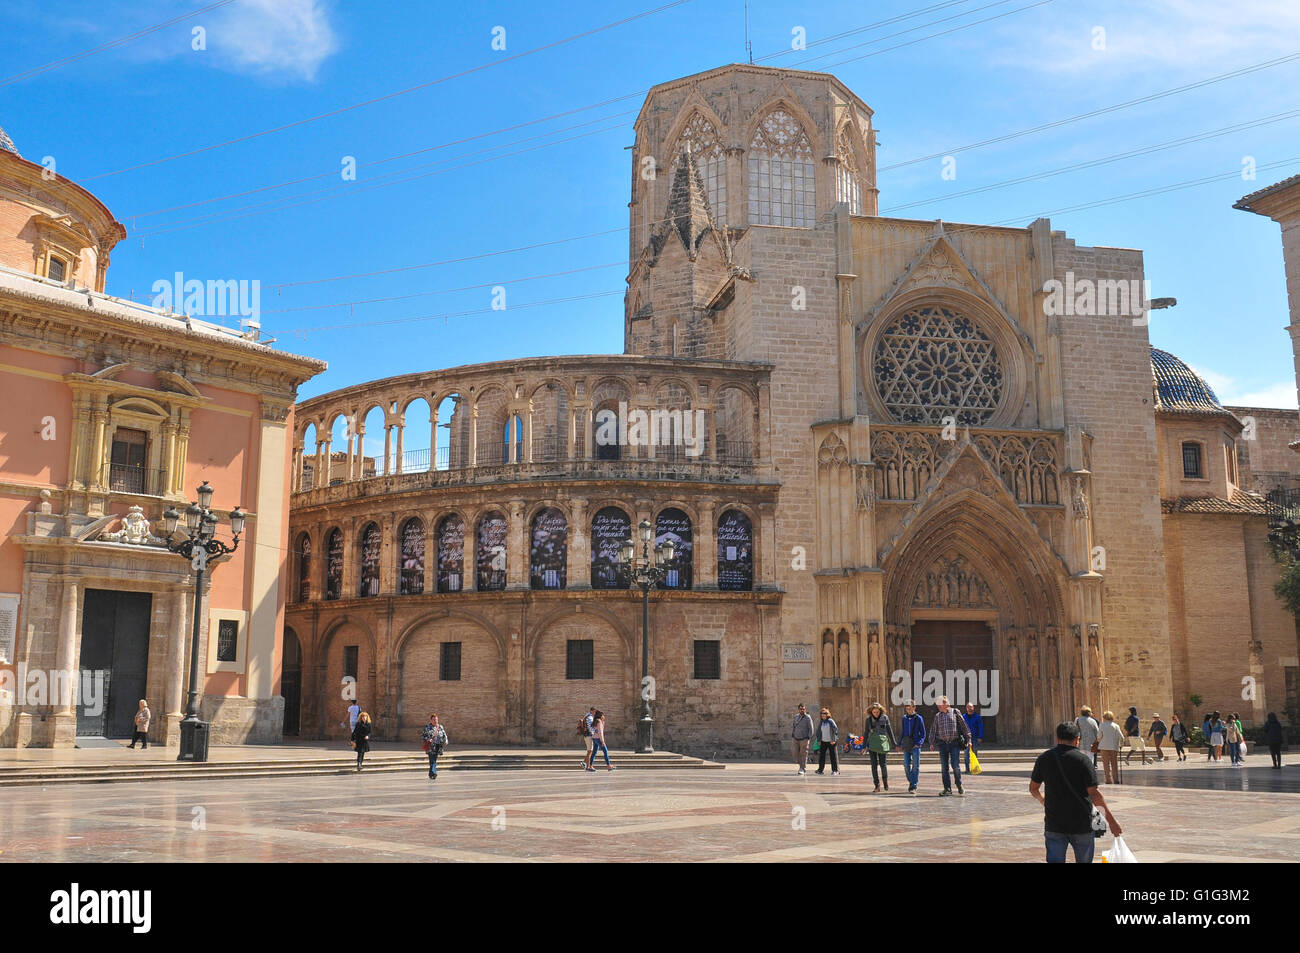 Valencia, Espagne - 30 mars 2016 : Vue de la cathédrale Saint Mary donnant sur la place principale de Valence, la troisième taille populatio Banque D'Images